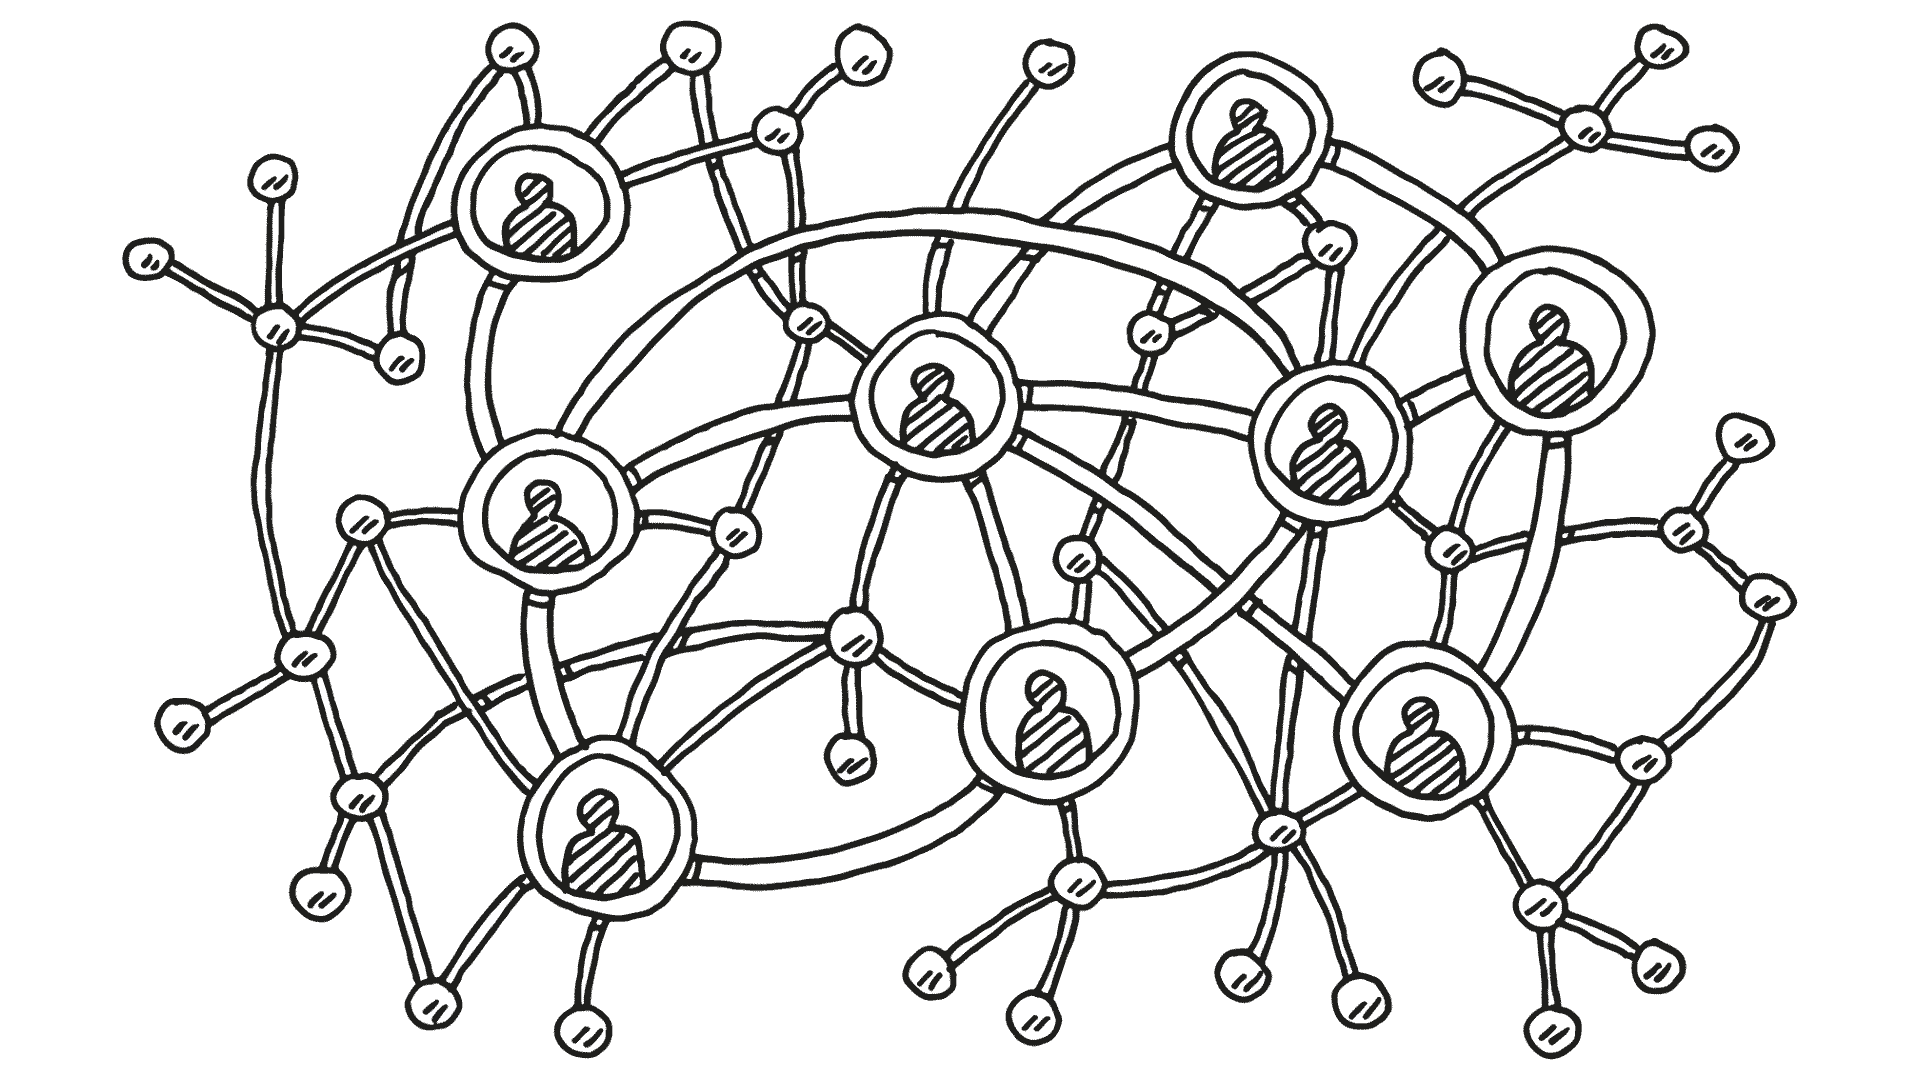 Nutzen Sie so viele Multiplikatoren, wie möglich. Sie haben ein eigenes relevantes Netzwerk.